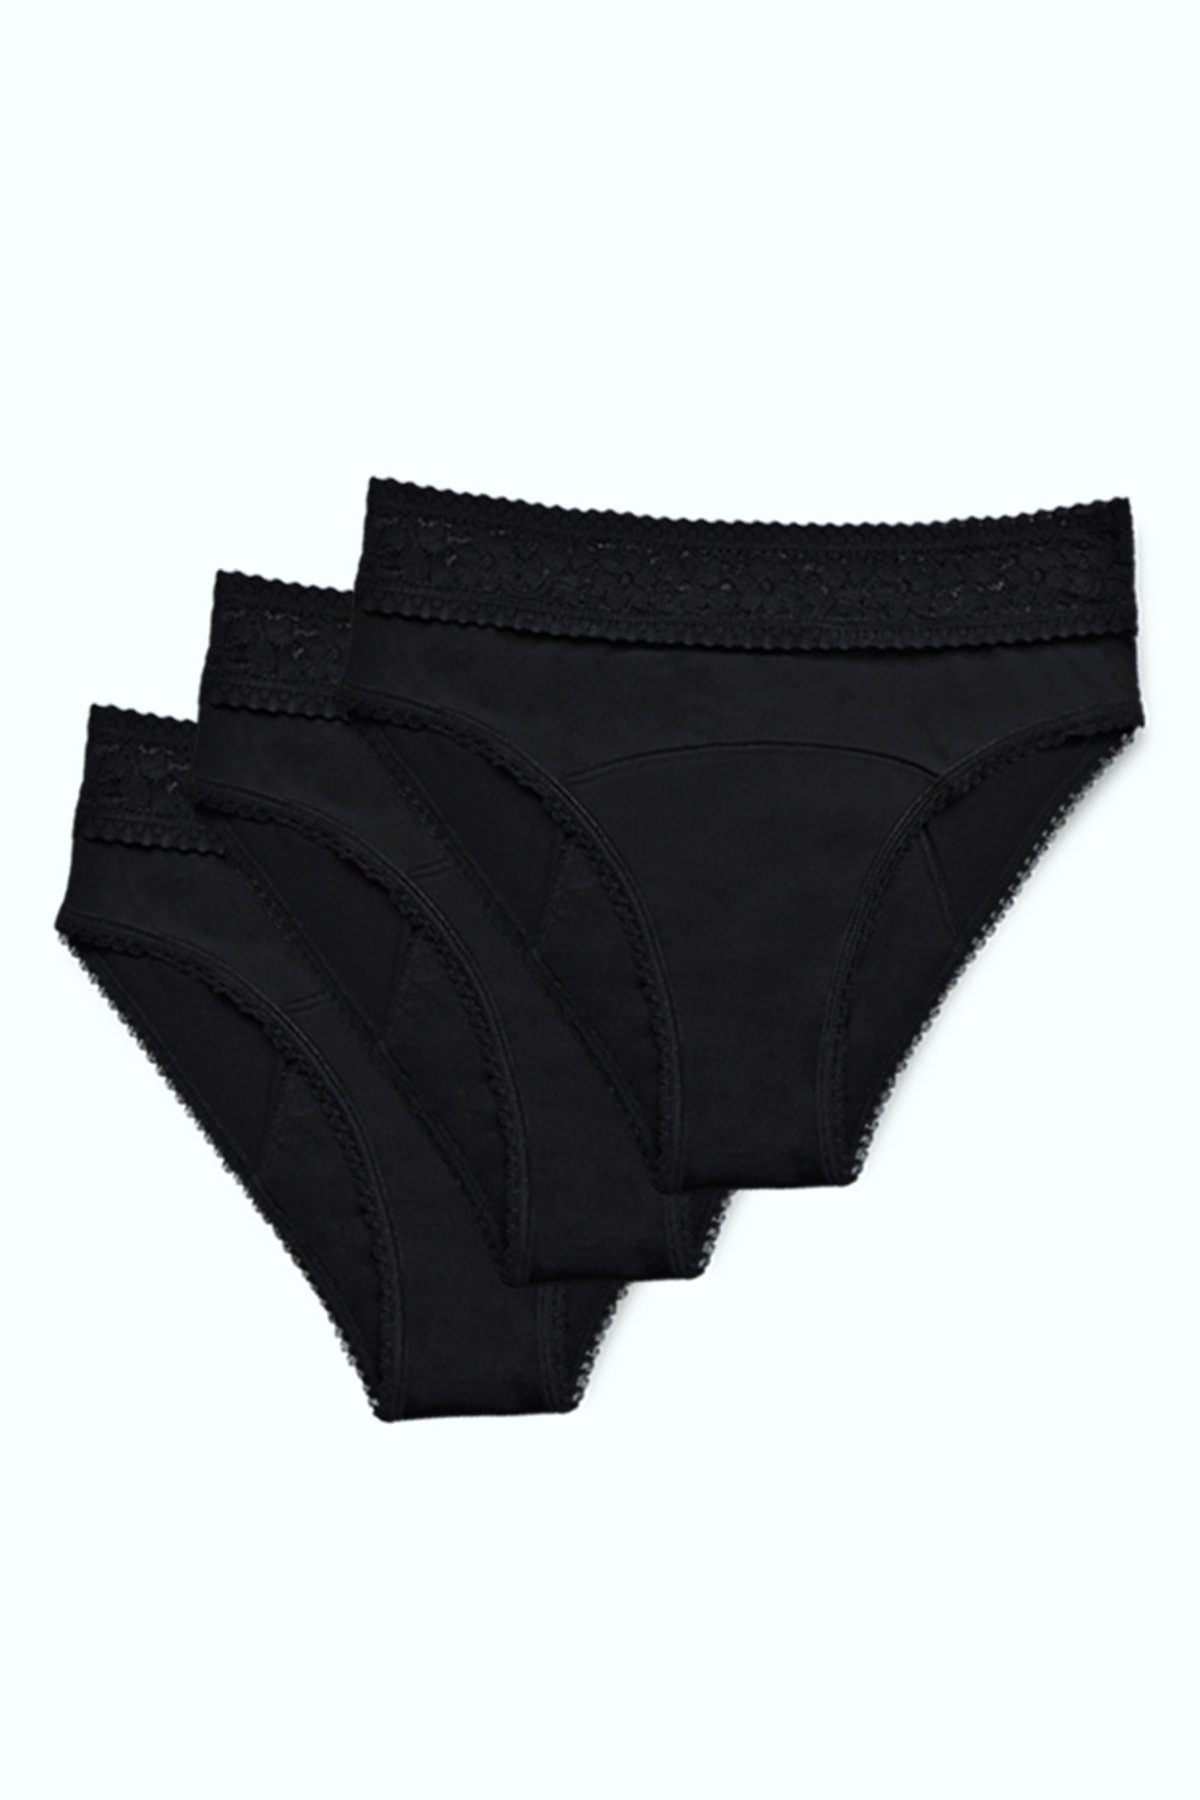 3-Pack Peddon Maxi Period Underwear